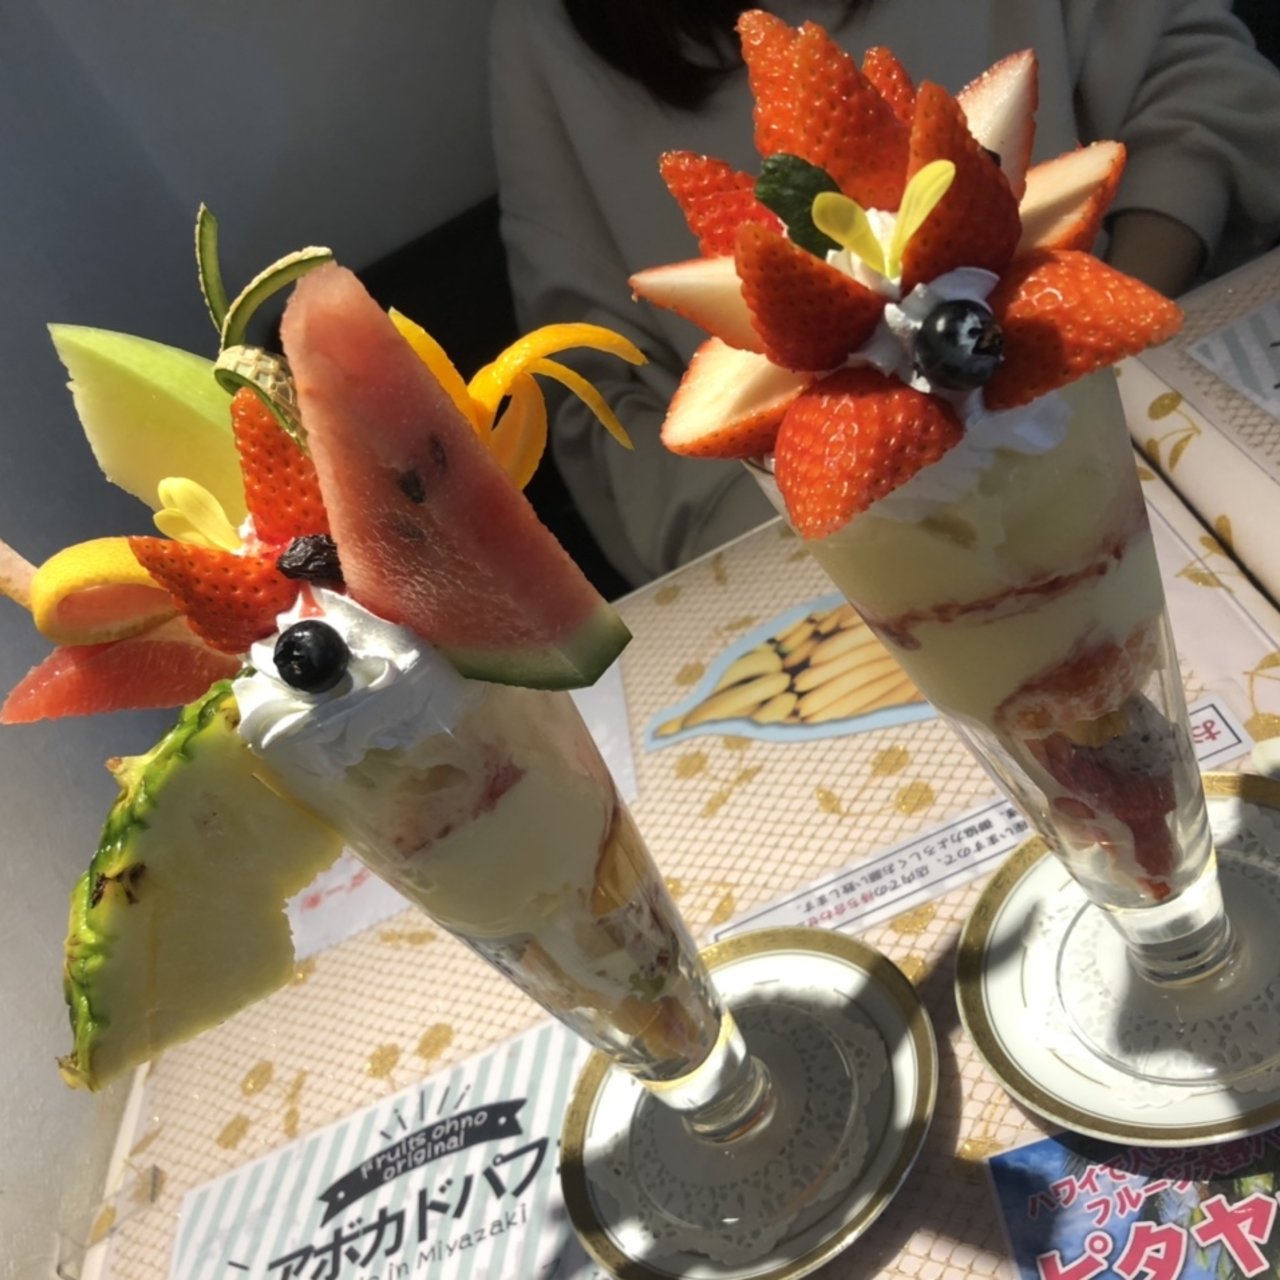 宮崎市で食べられる人気パフェランキング Sarah サラ